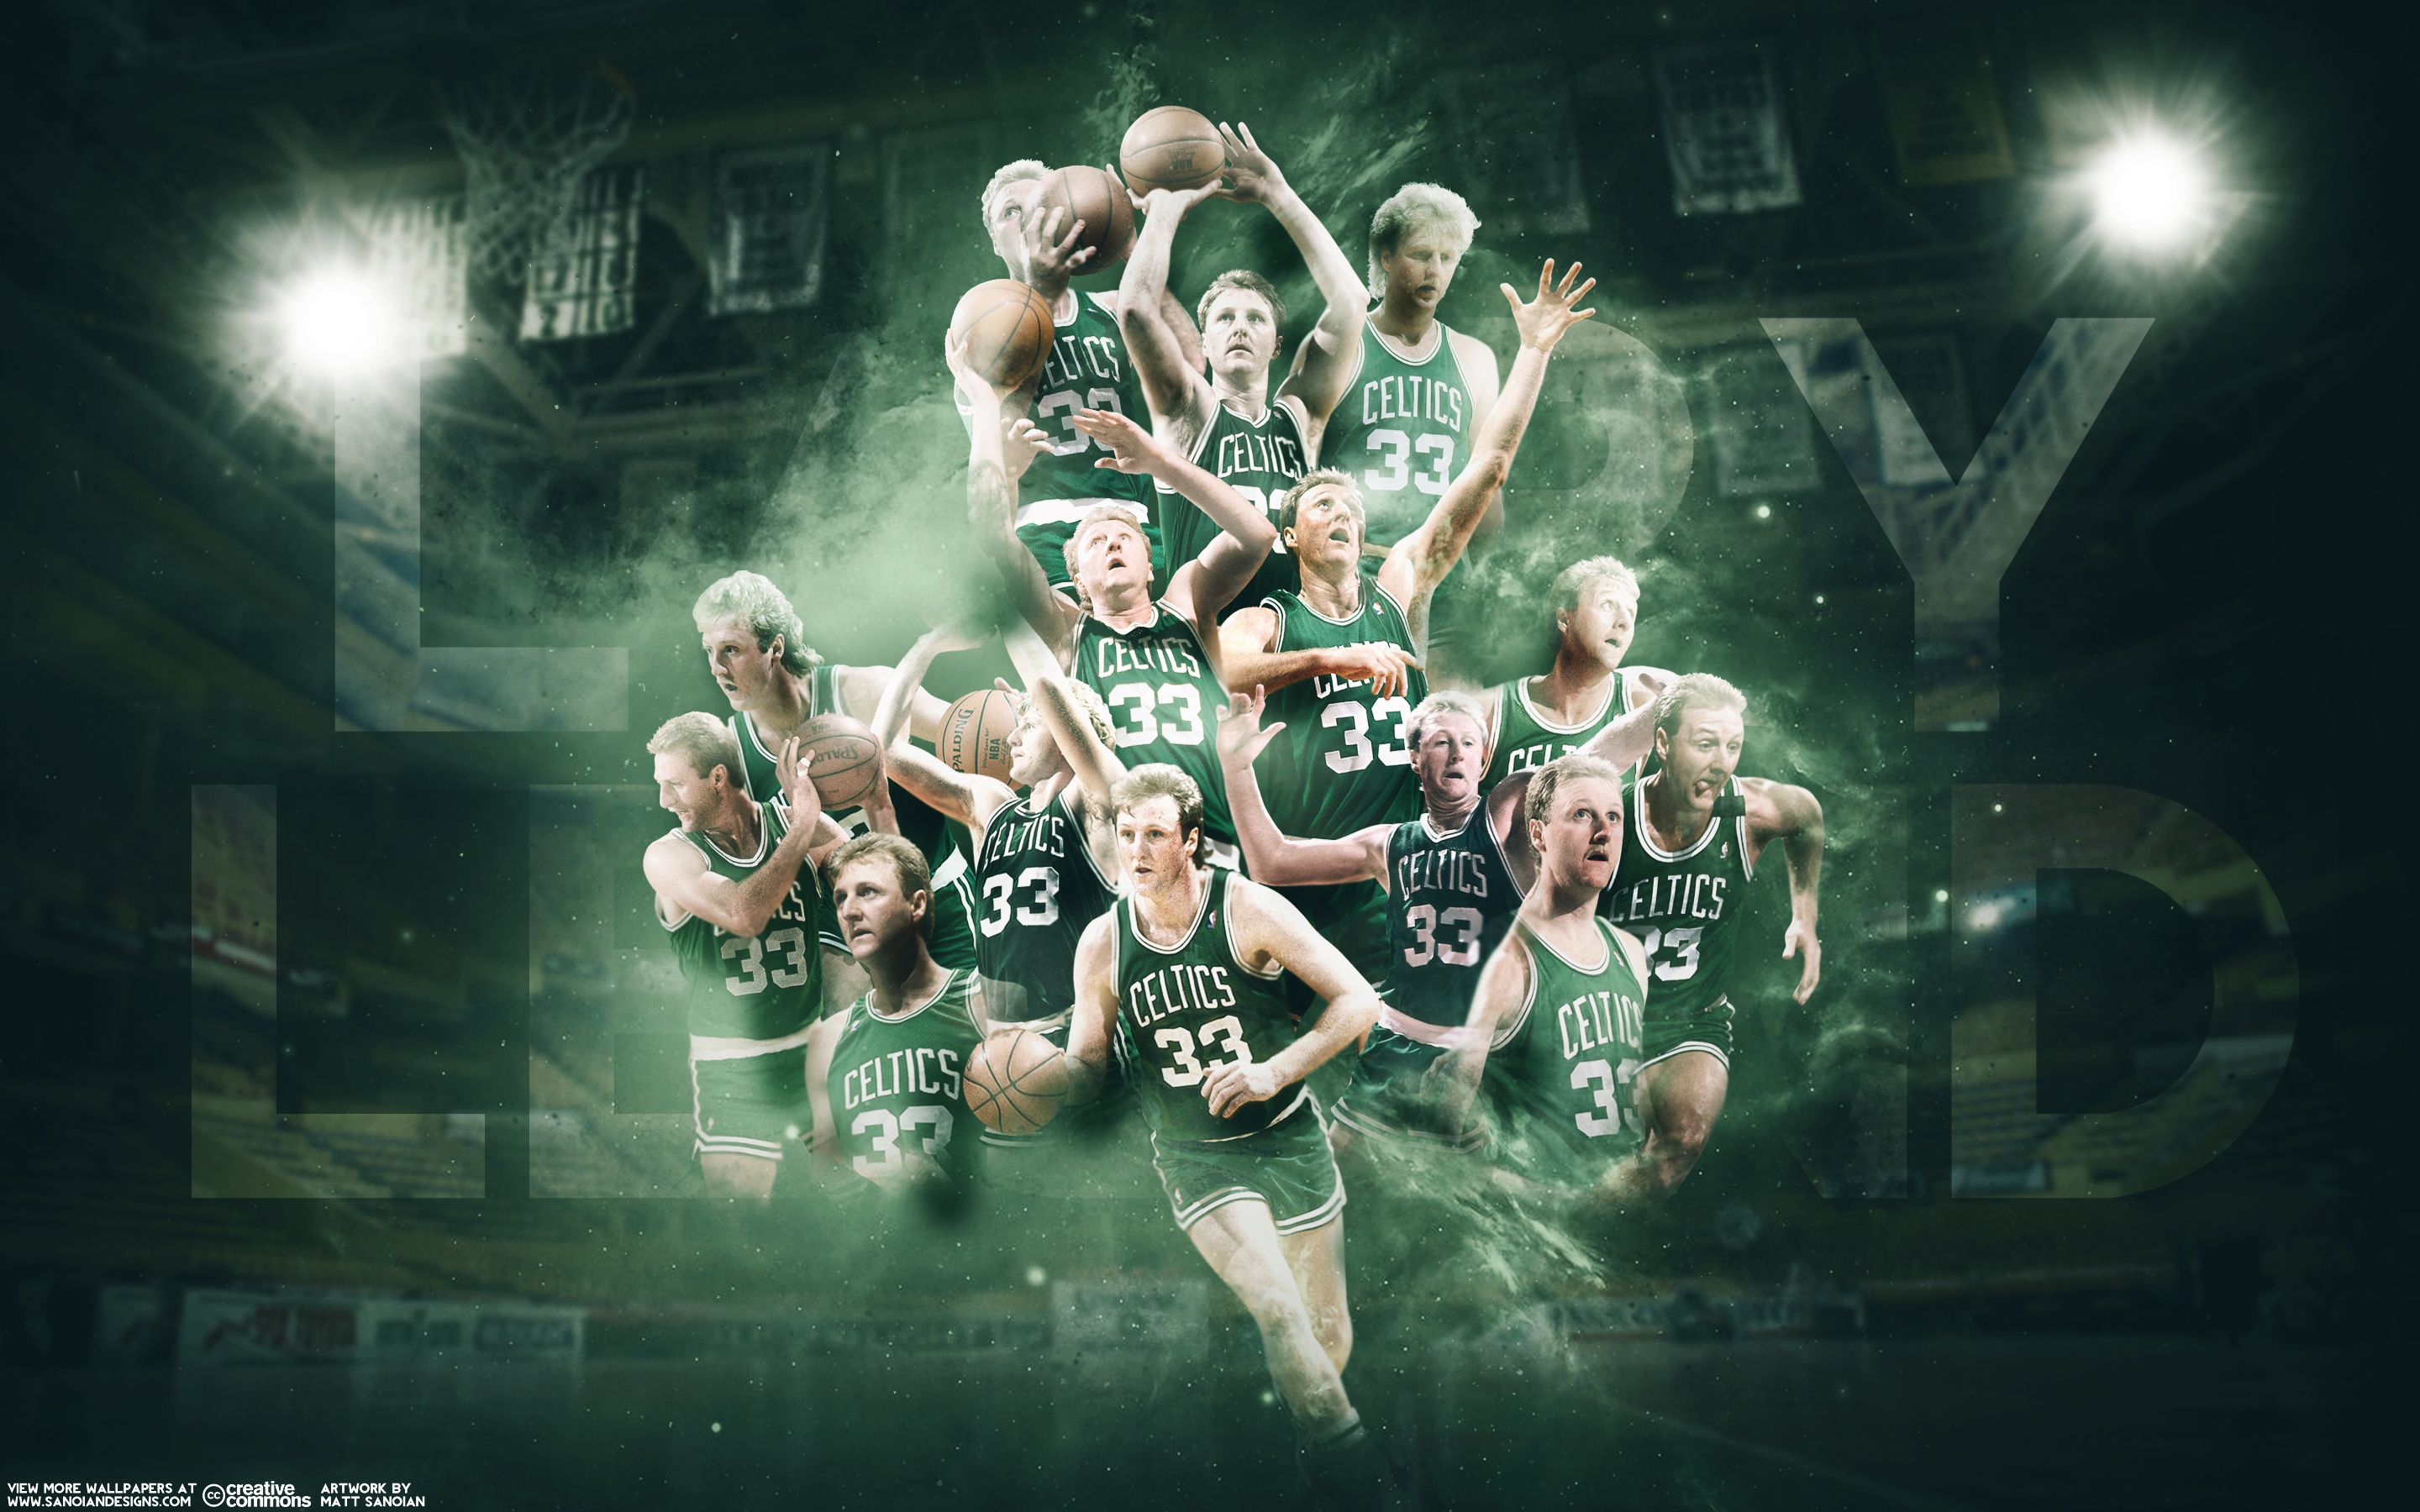 Isaiah Thomas All star Wallpaper Celtics. Star wallpaper, Isaiah thomas, Larry bird